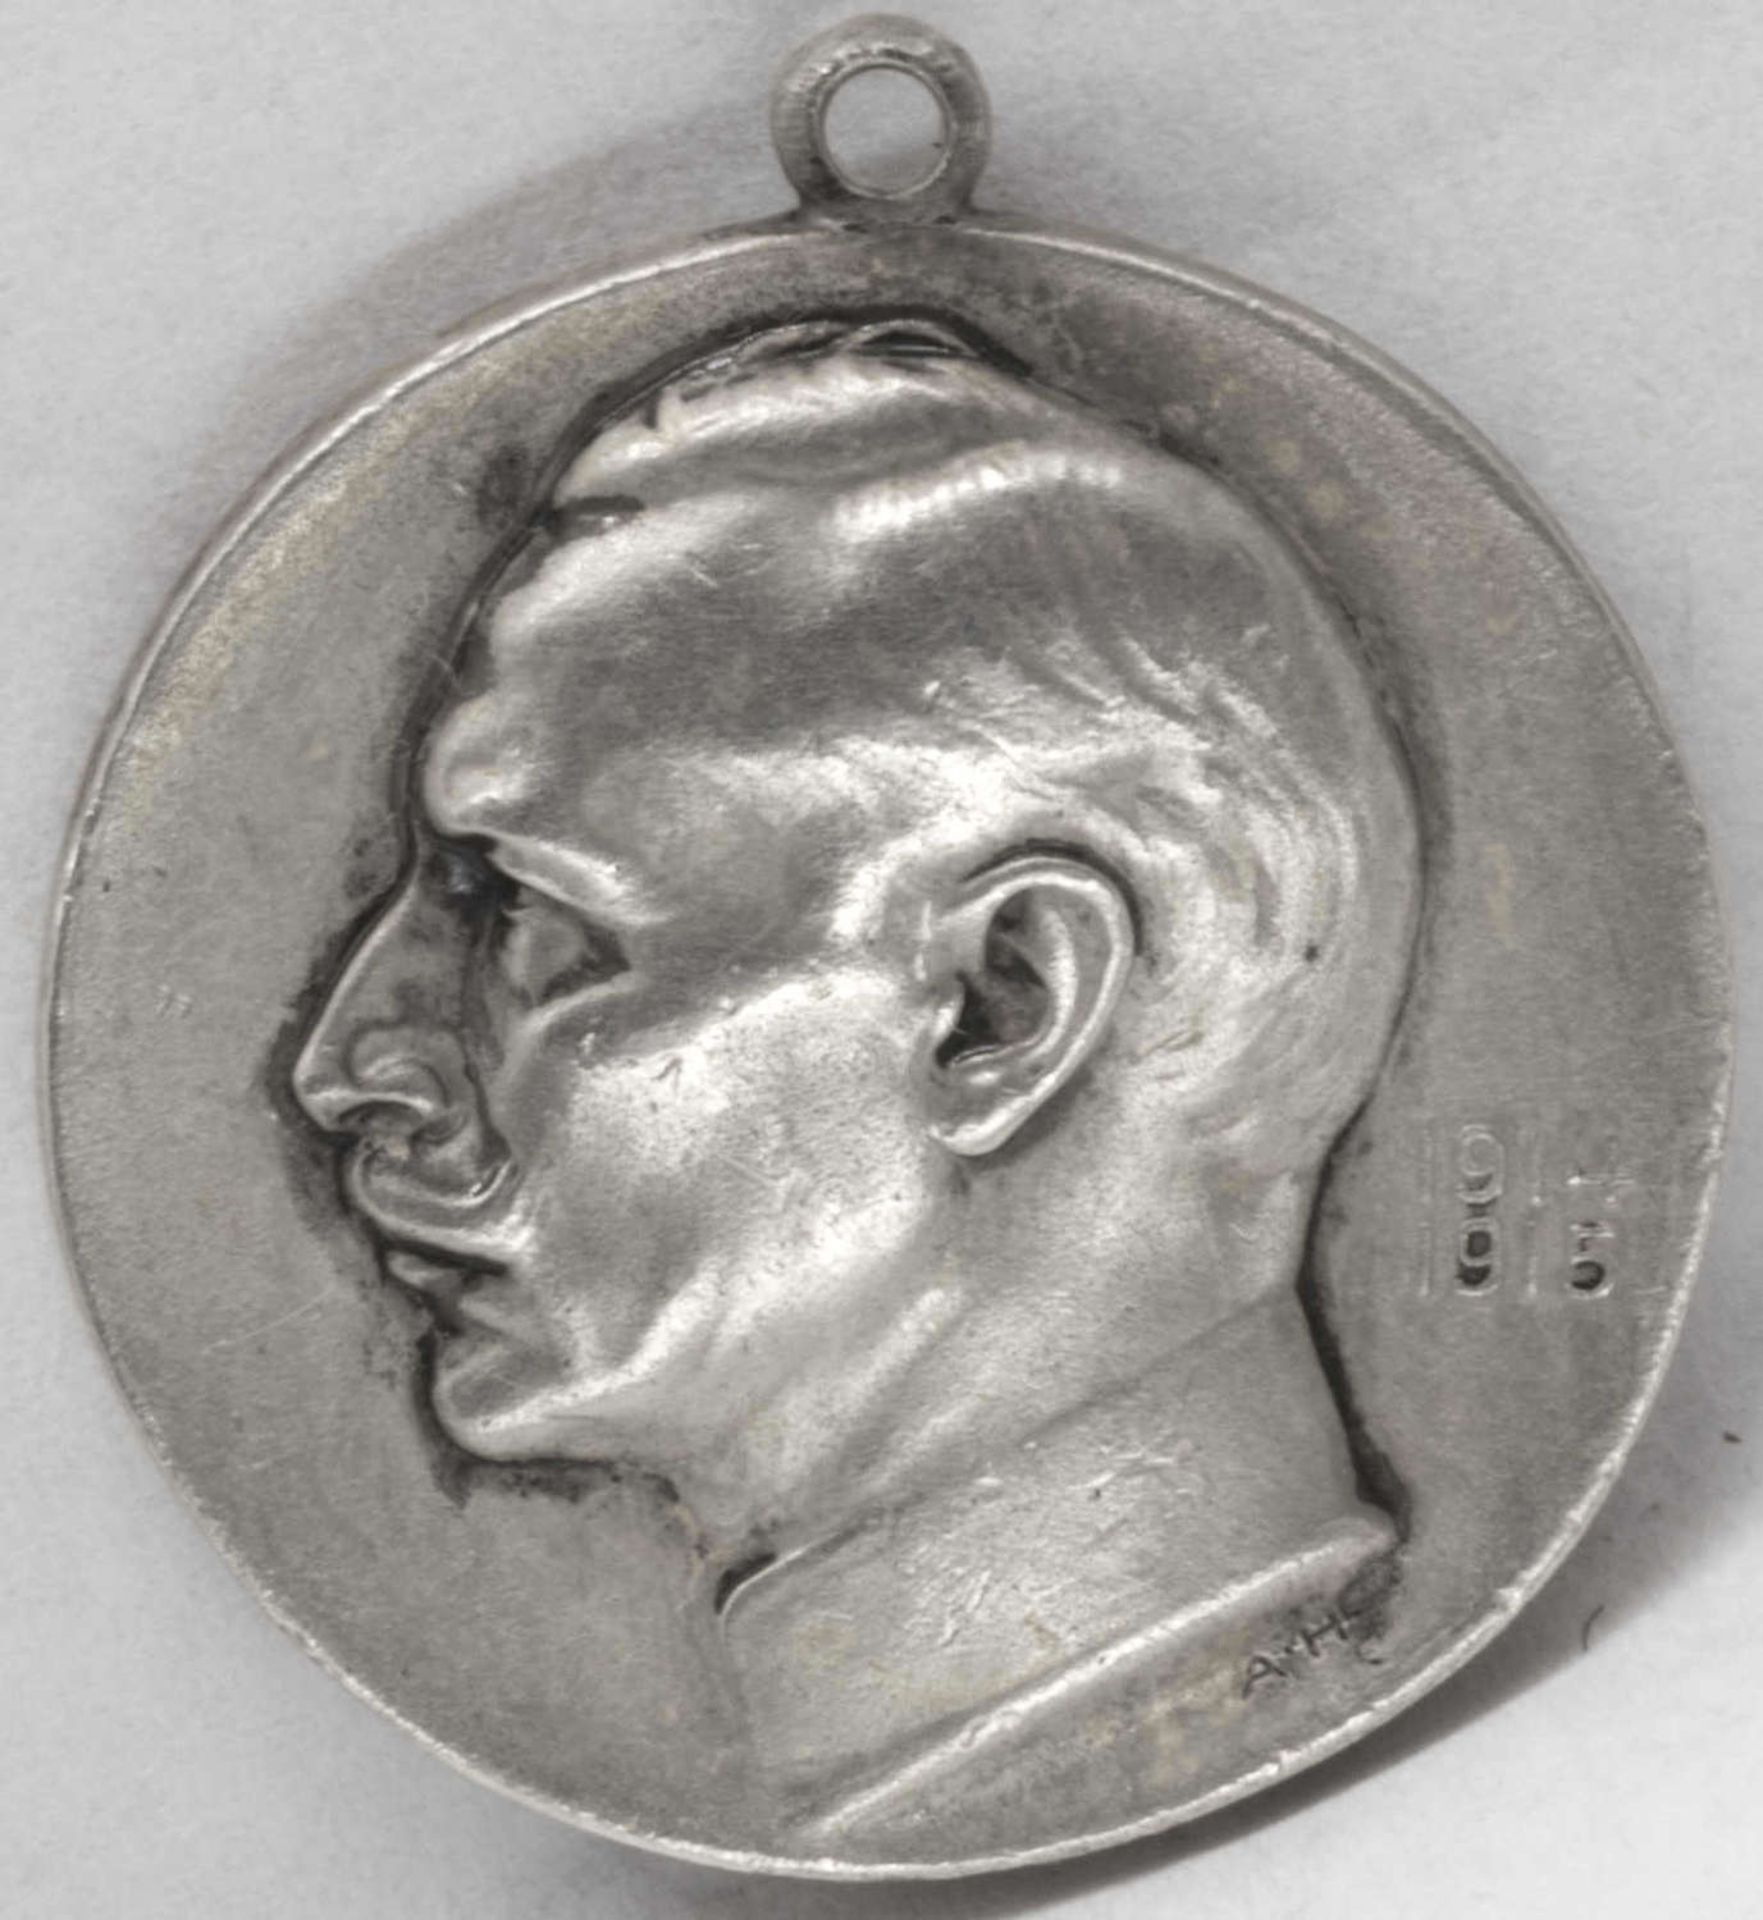 Deutsches Kaiserreich 1914/15, Tragbare Silbermedaille von A. Harting. AV: Wilhelm II., RV. Franz